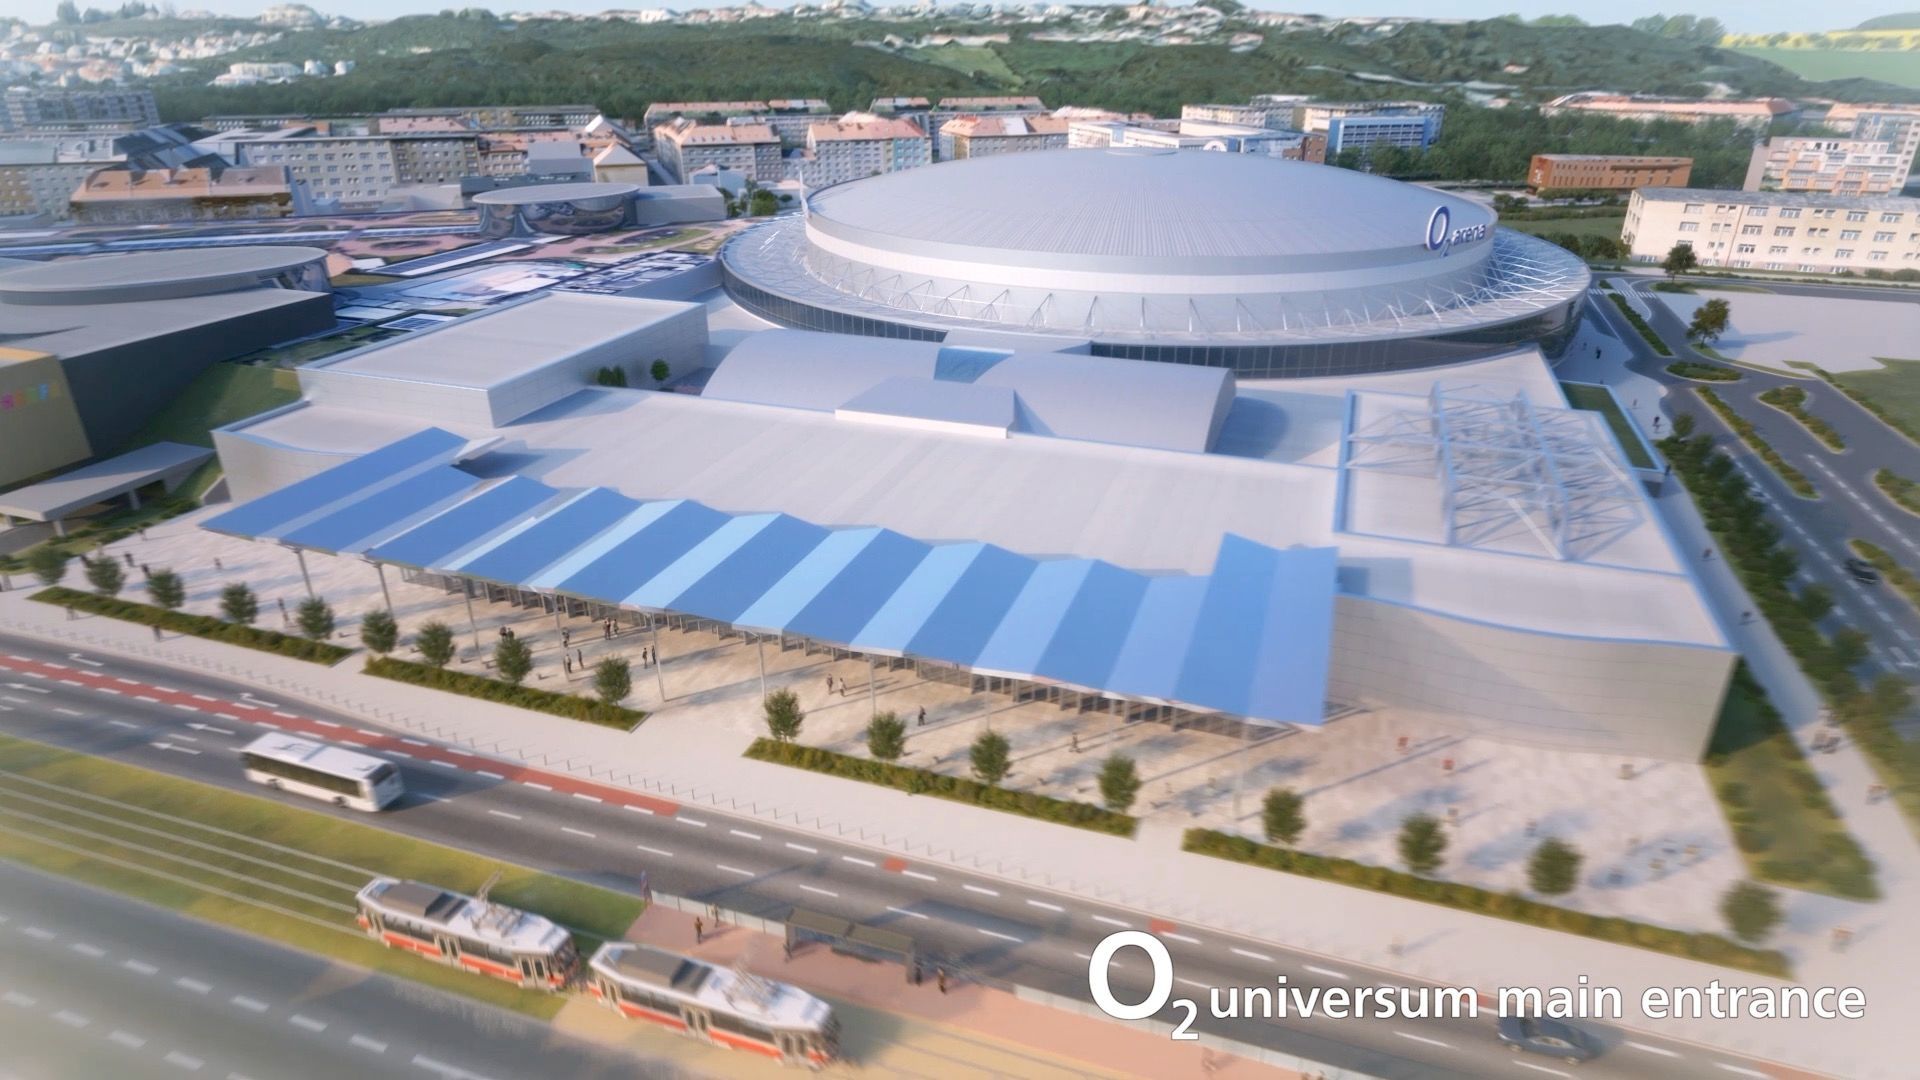 Nové sály s kapacitou 10 tisíc návštěvníků, O2 arena se rozroste. Dostavba se bude jmenovat O2 universum